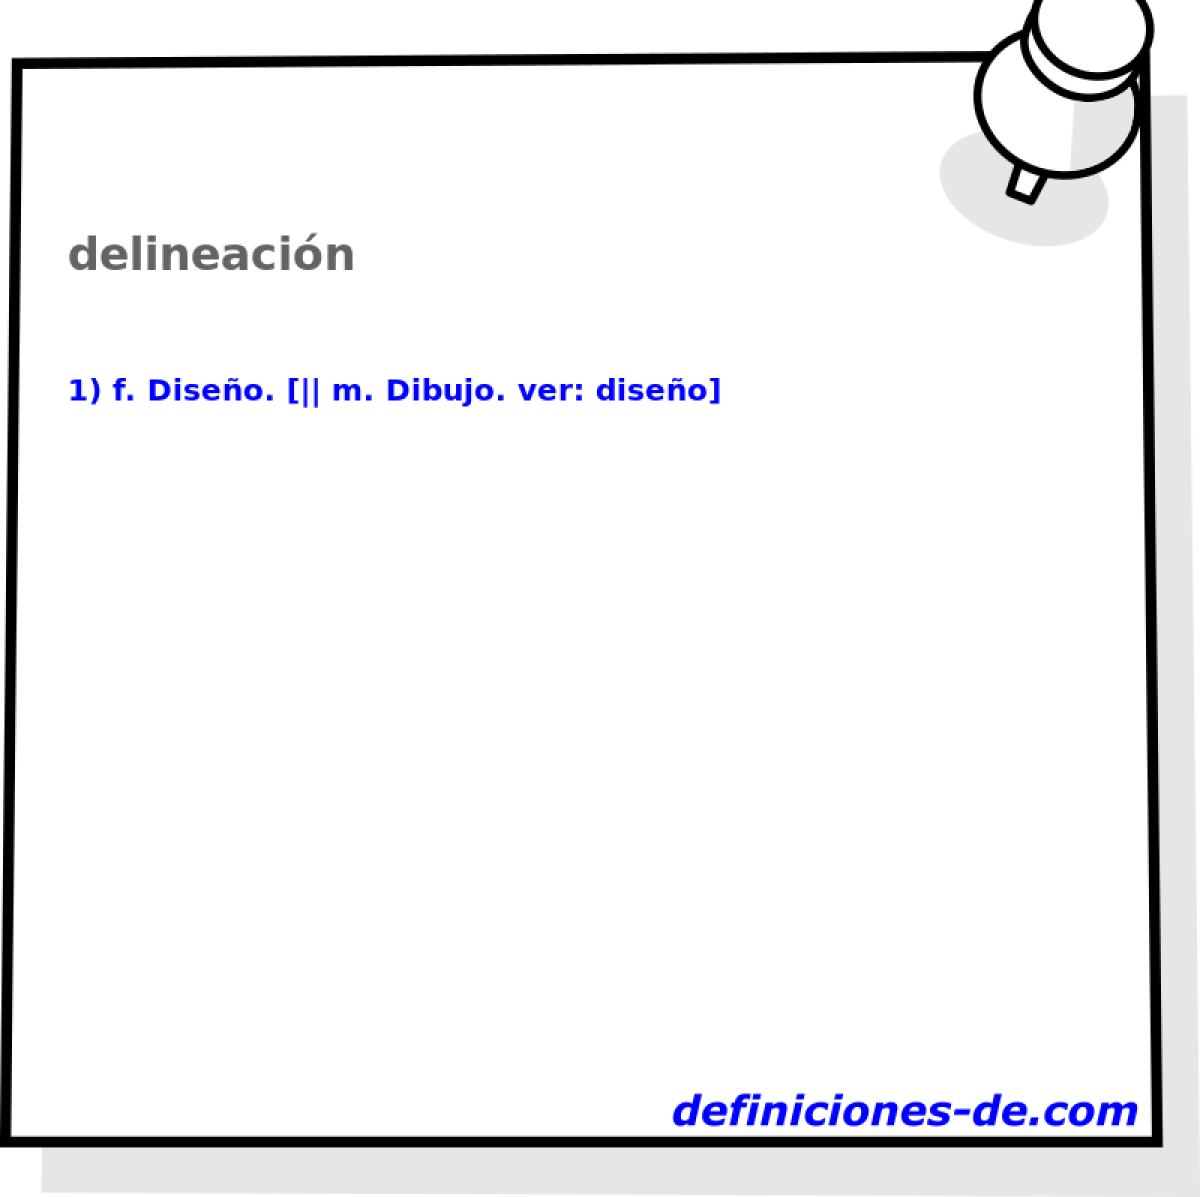 delineacin 